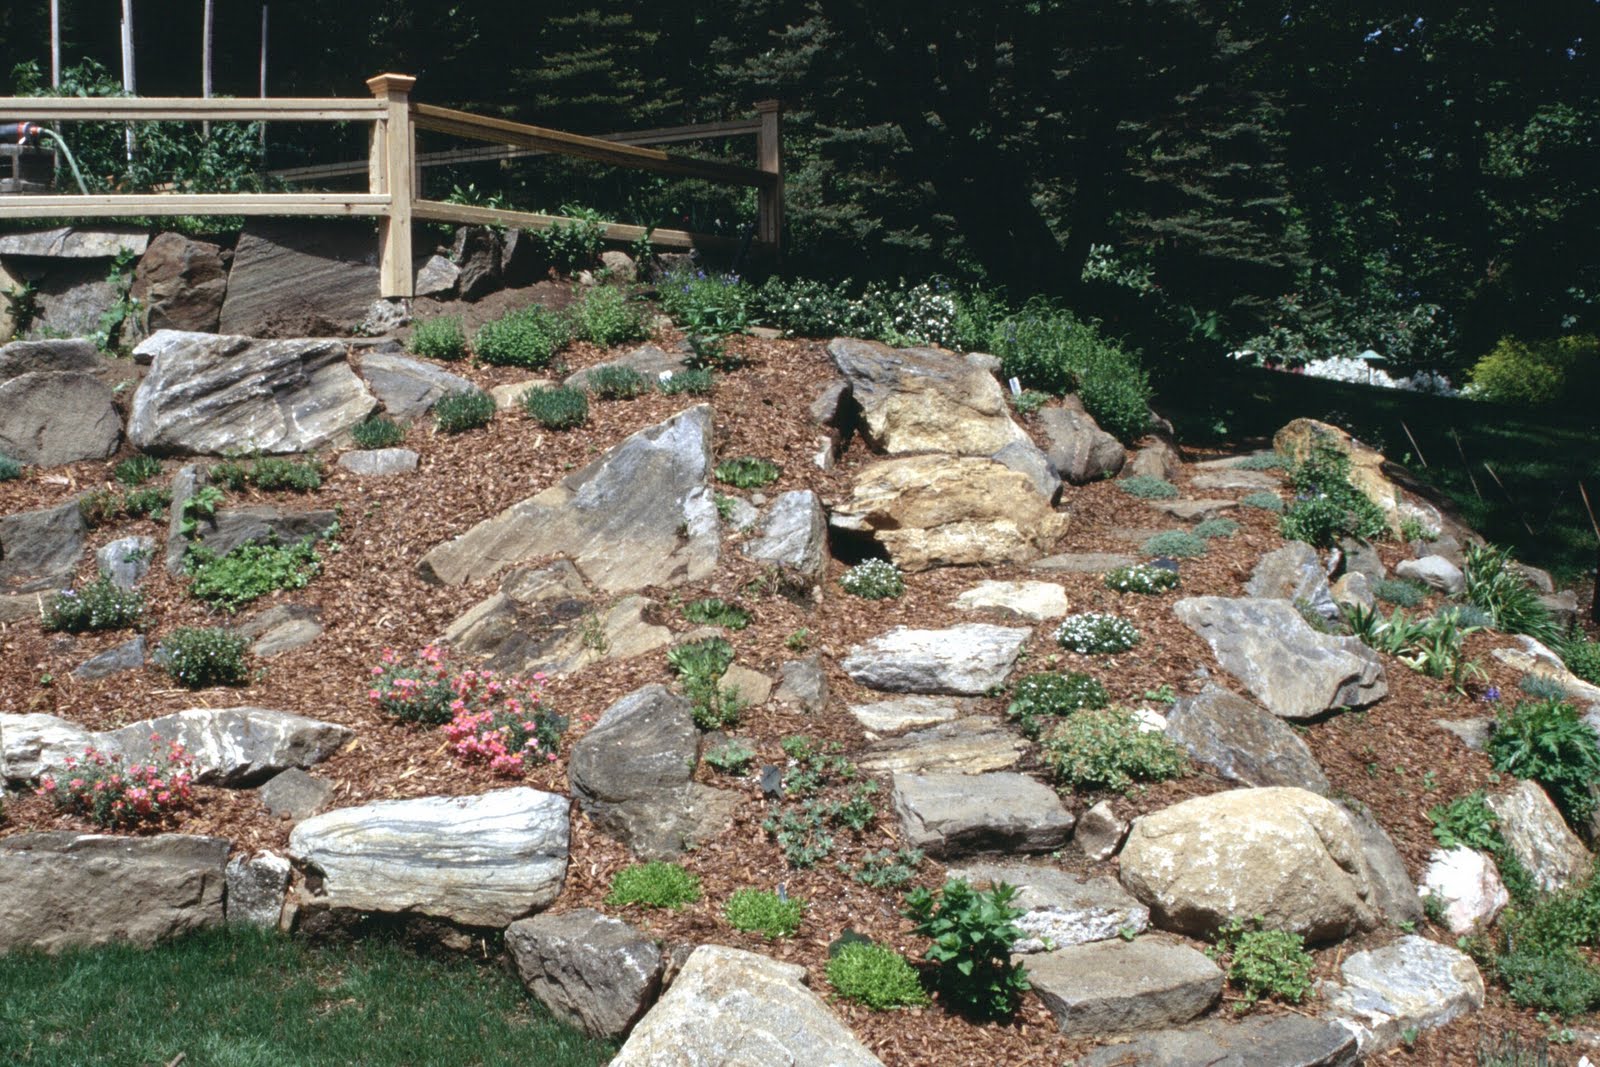 the existing rock garden